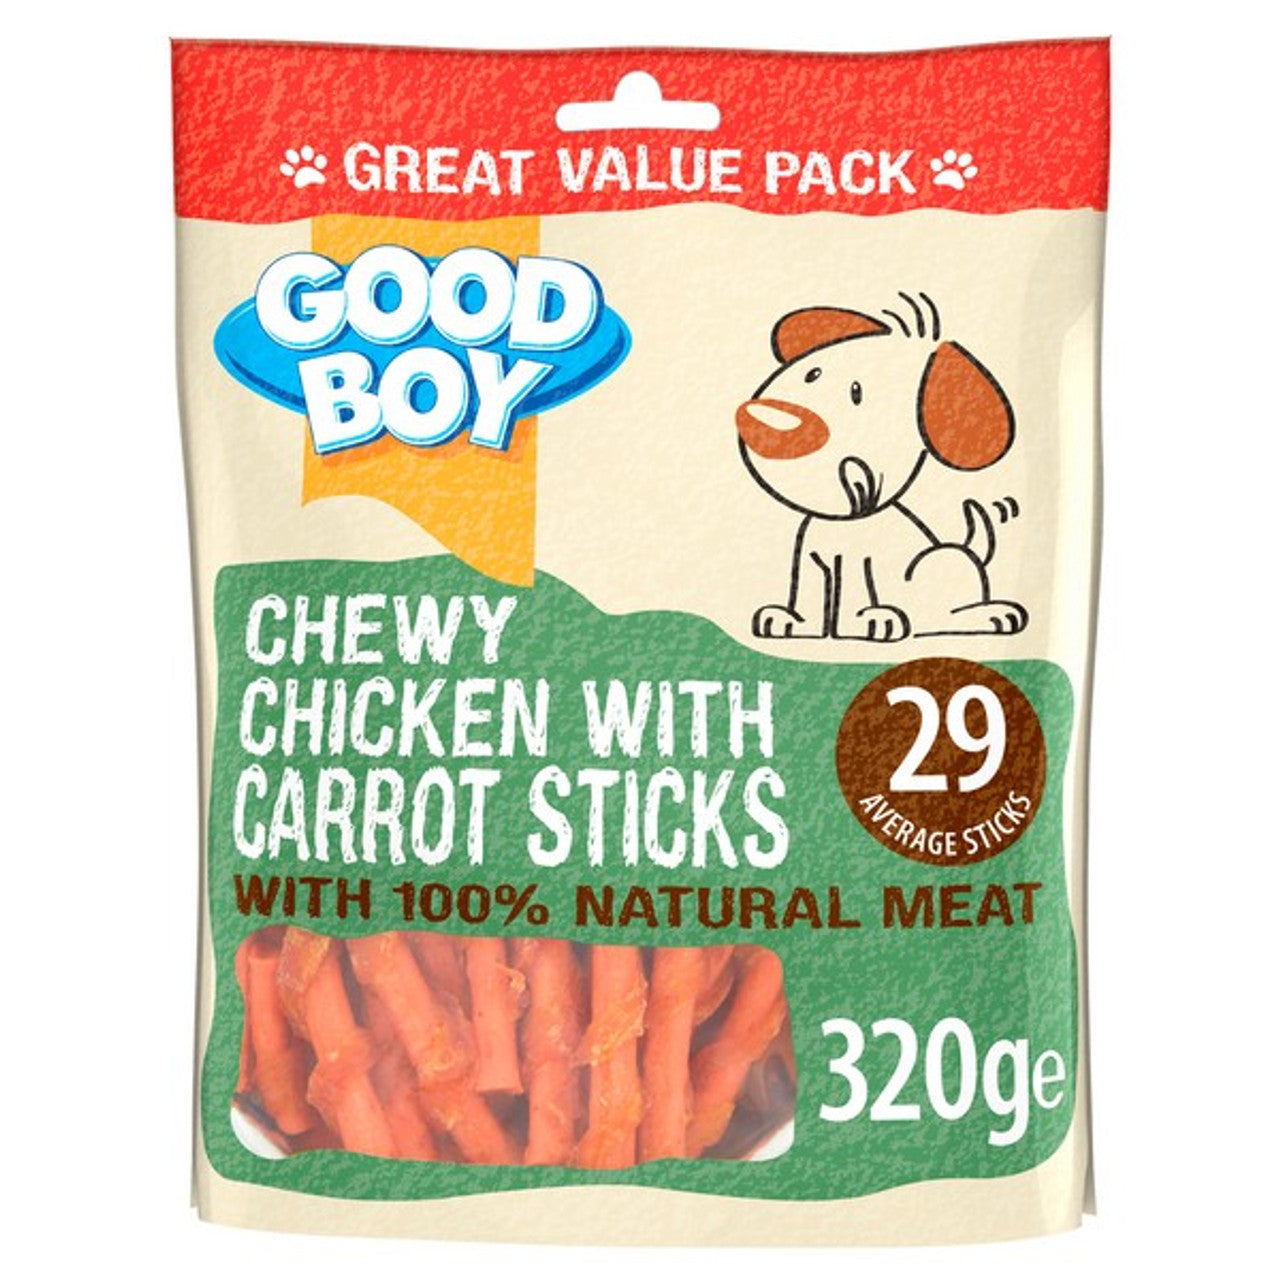 Good Boy Chicken & Carrot Sticks 320g